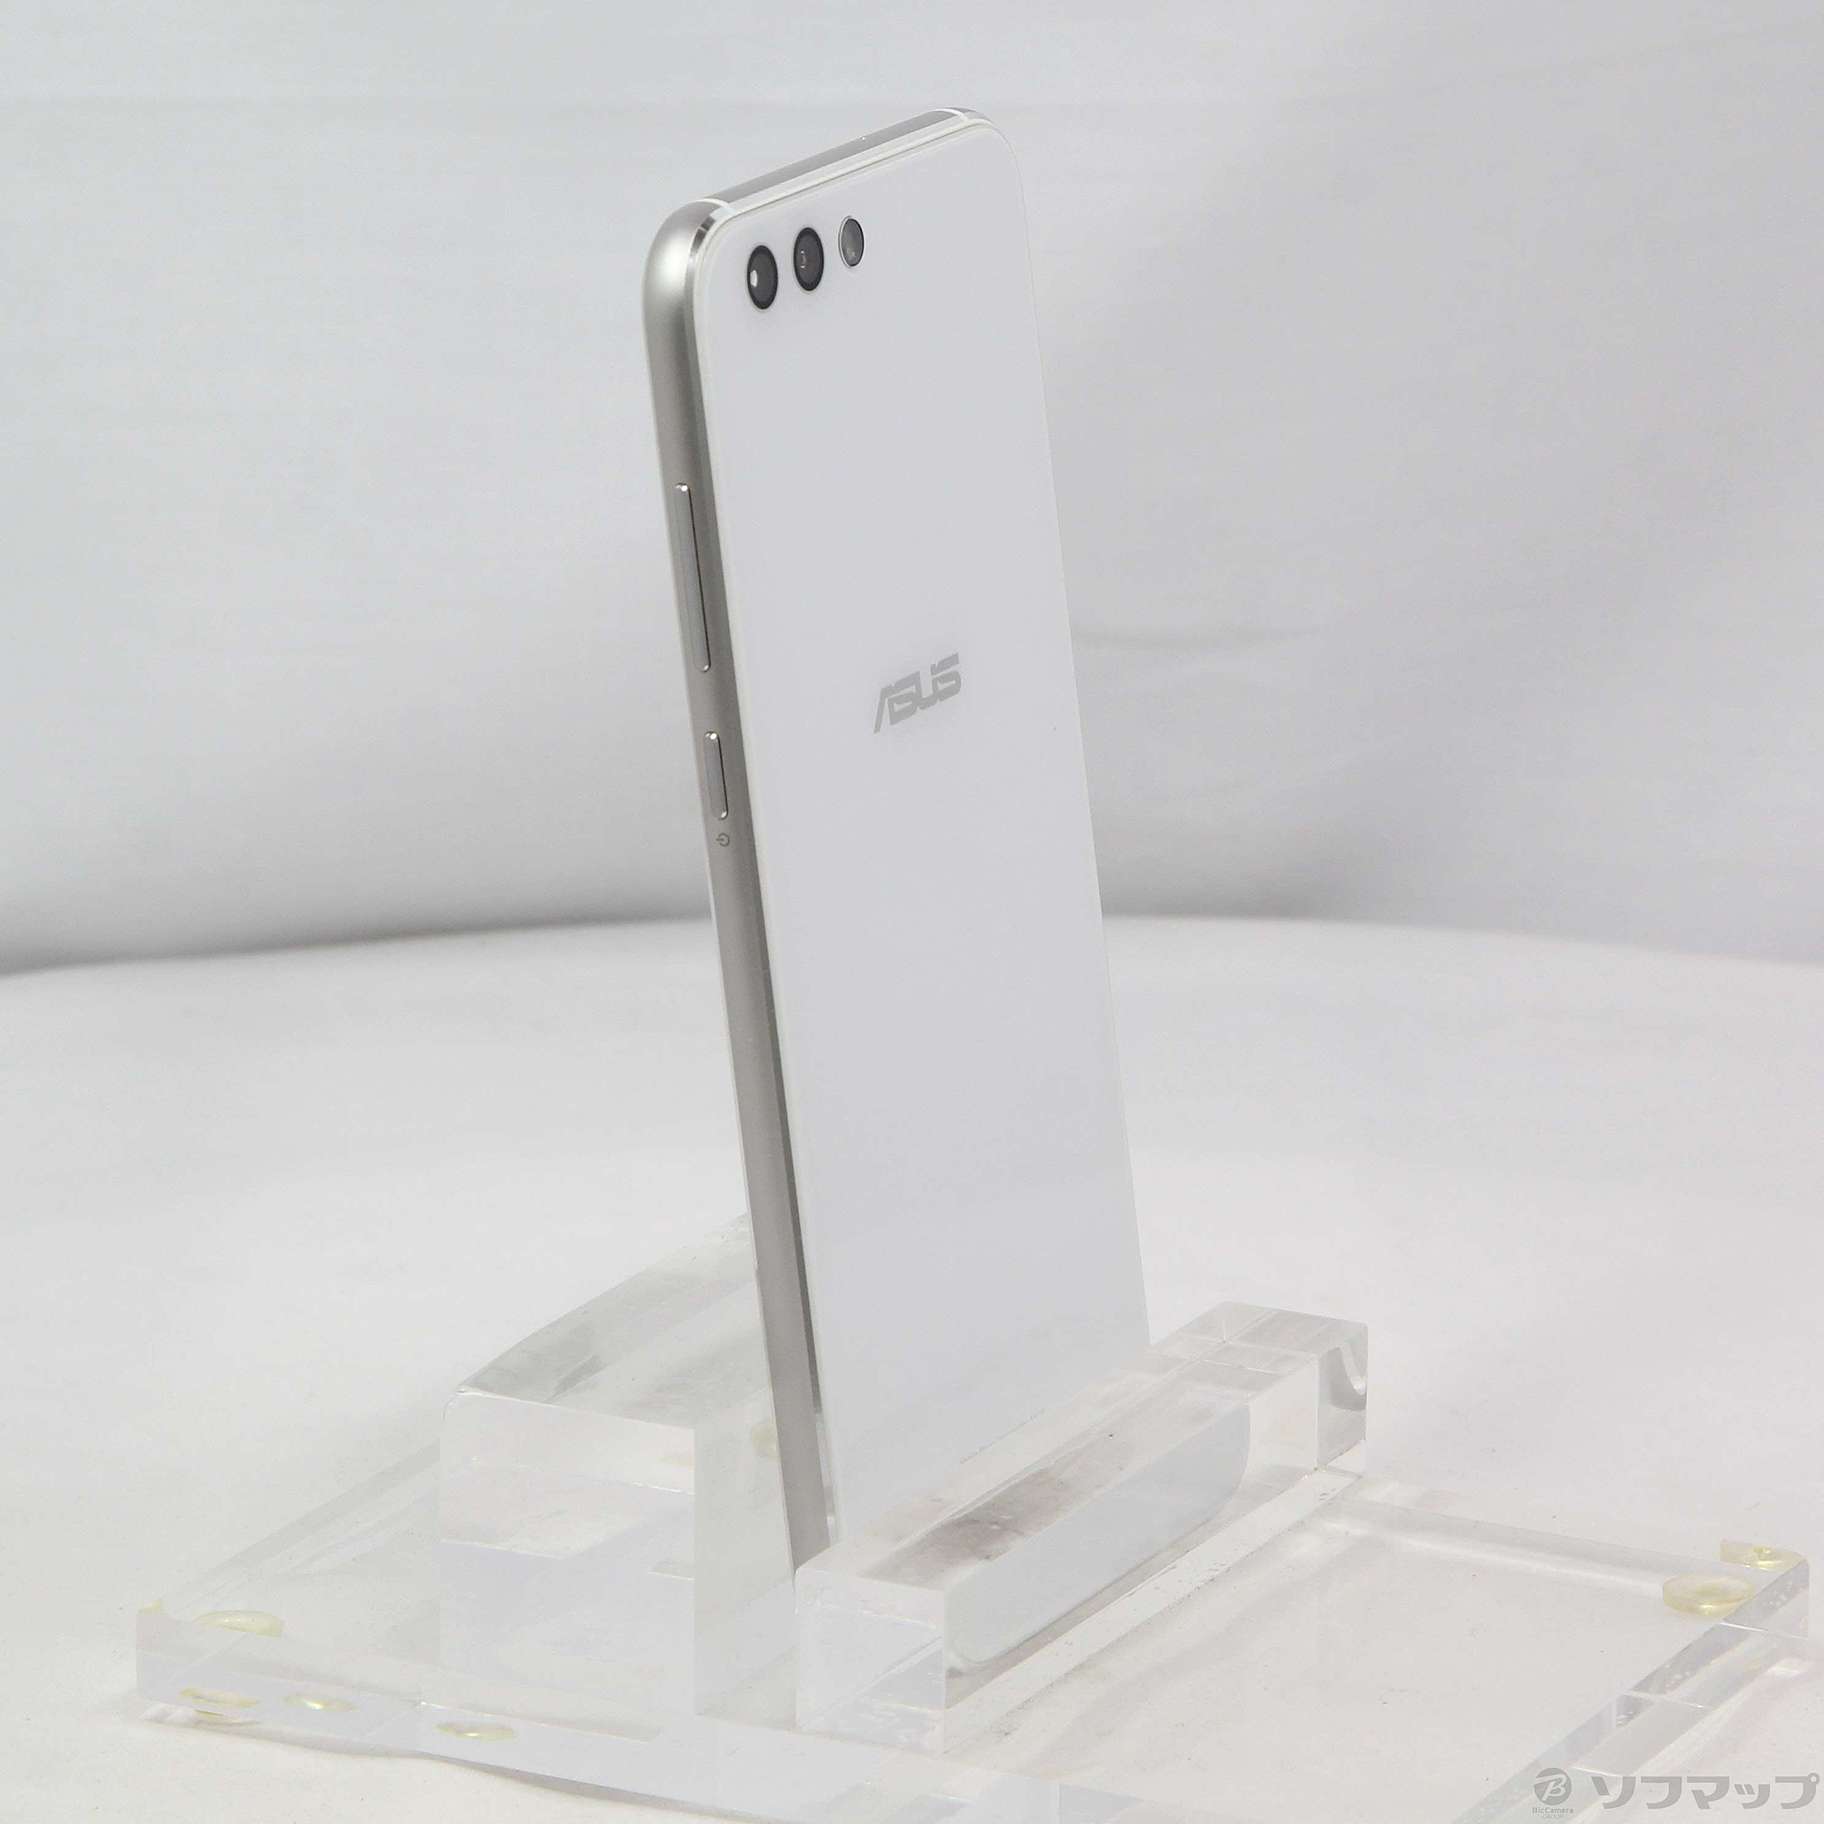 中古品〕 ZenFone 4 64GB ムーンライトホワイト ZE554KL-WH64S6 SIM ...